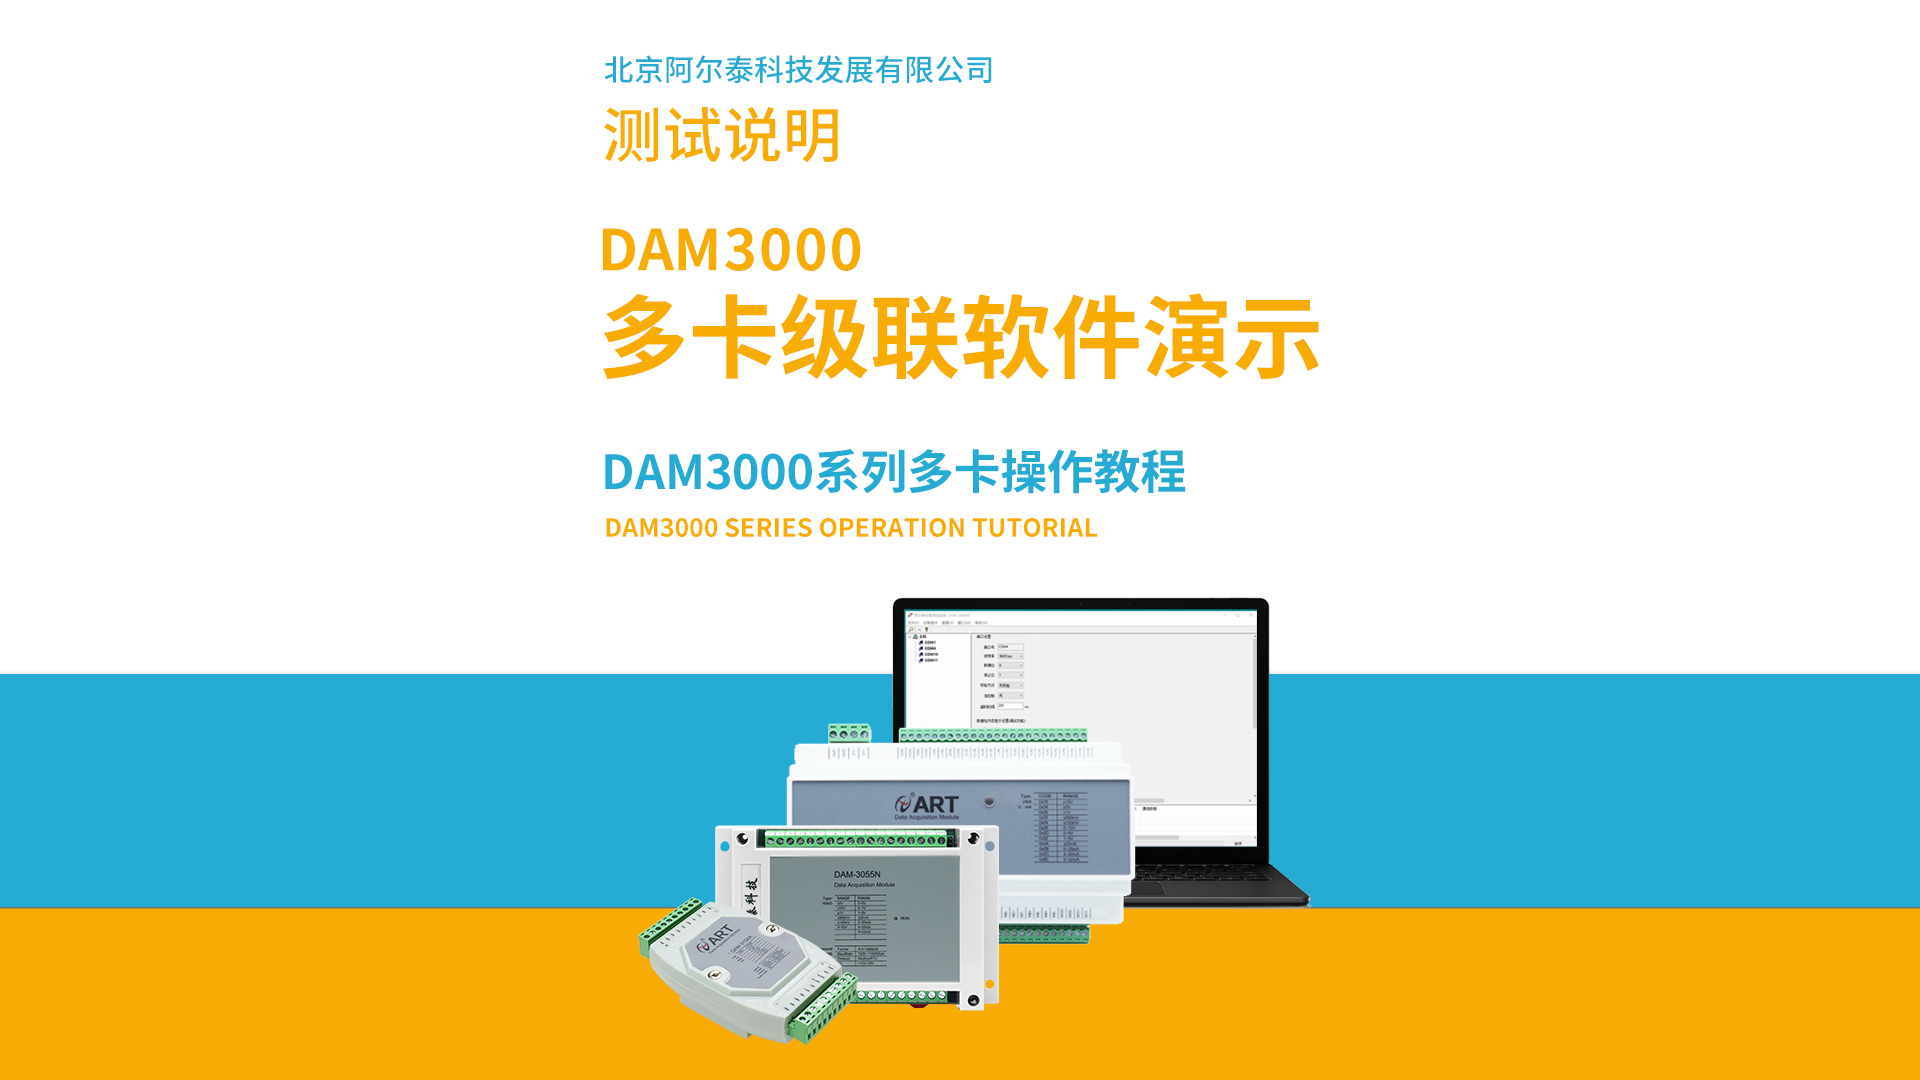 阿爾泰科技DAM3000系列多卡級聯軟件操作教程# #從入門到精通，一起講透元器件！  #數據采集 #工控 